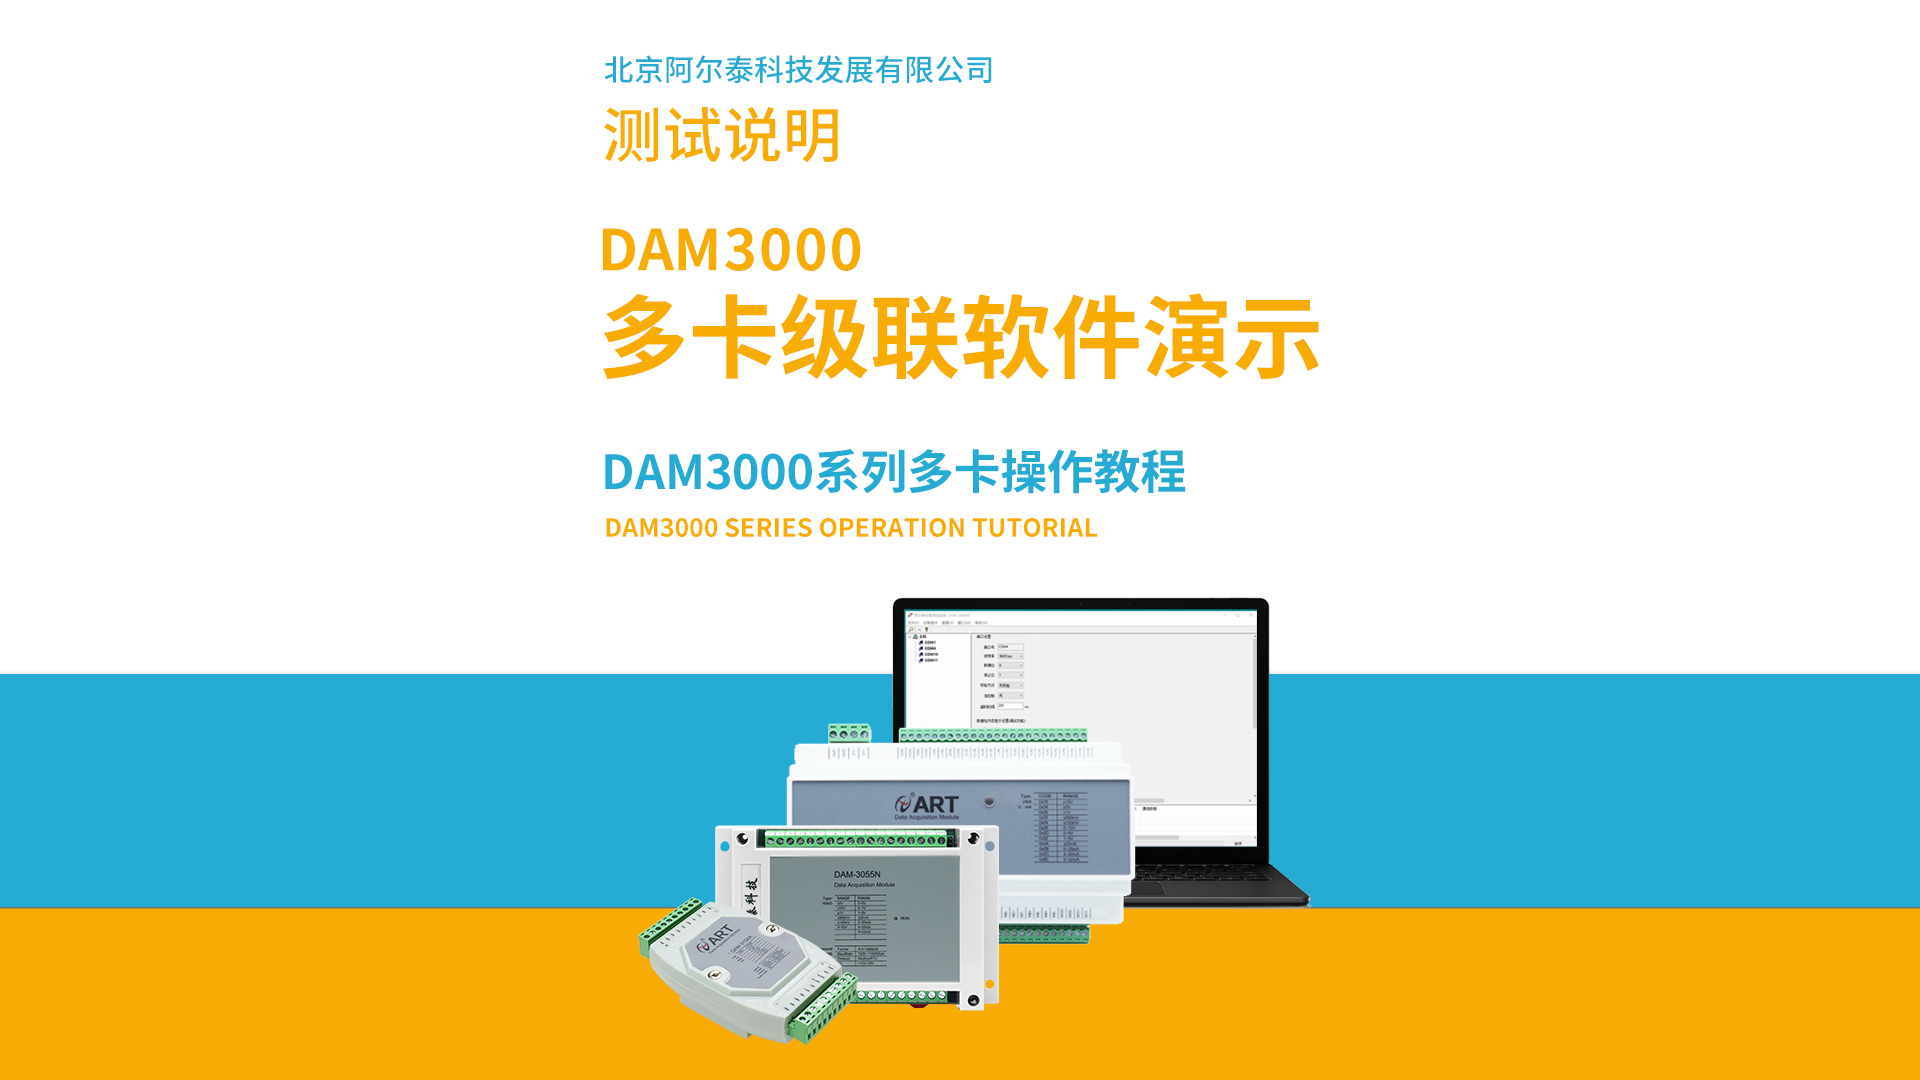 阿爾泰科技DAM3000系列多卡級聯軟件操作教程# #從入門到精通，一起講透元器件！  #數據采集 #工控 